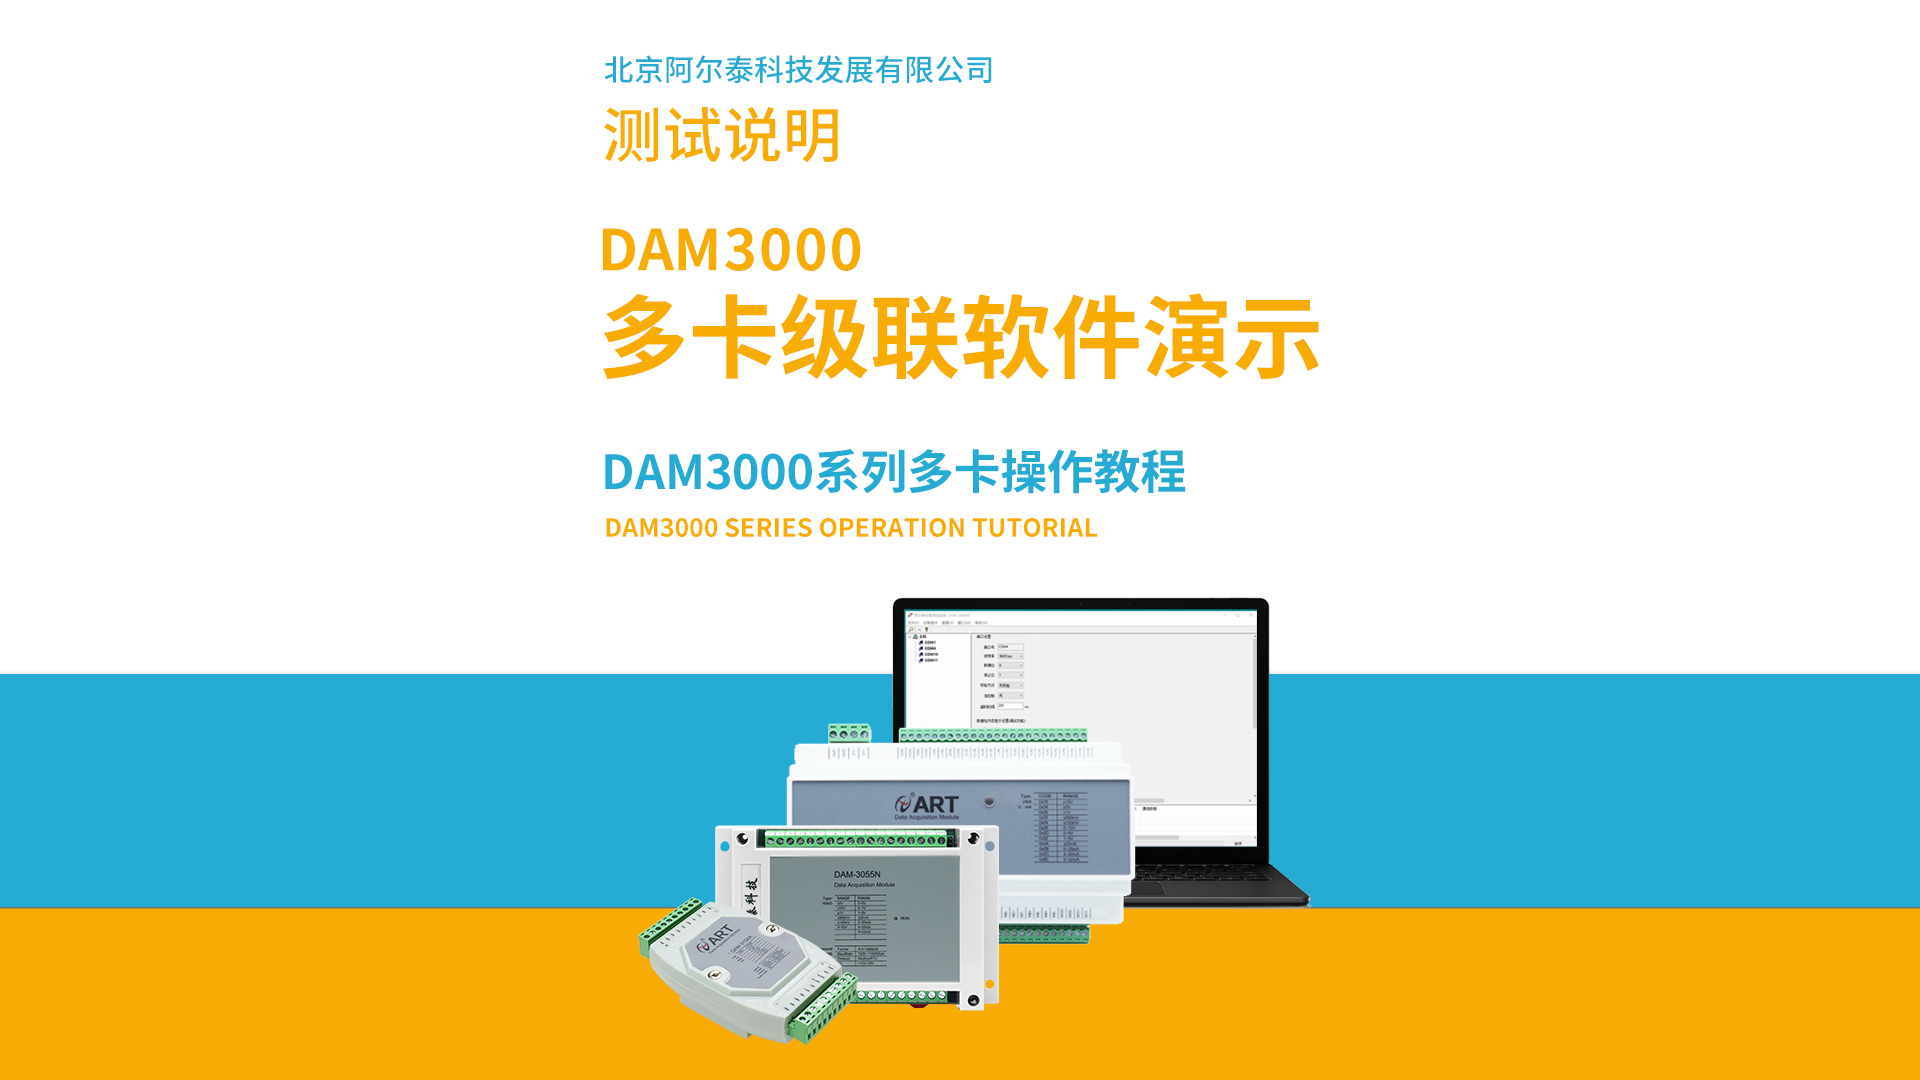 阿爾泰科技DAM3000系列多卡級聯軟件操作教程# #從入門到精通，一起講透元器件！  #數據采集 #工控 